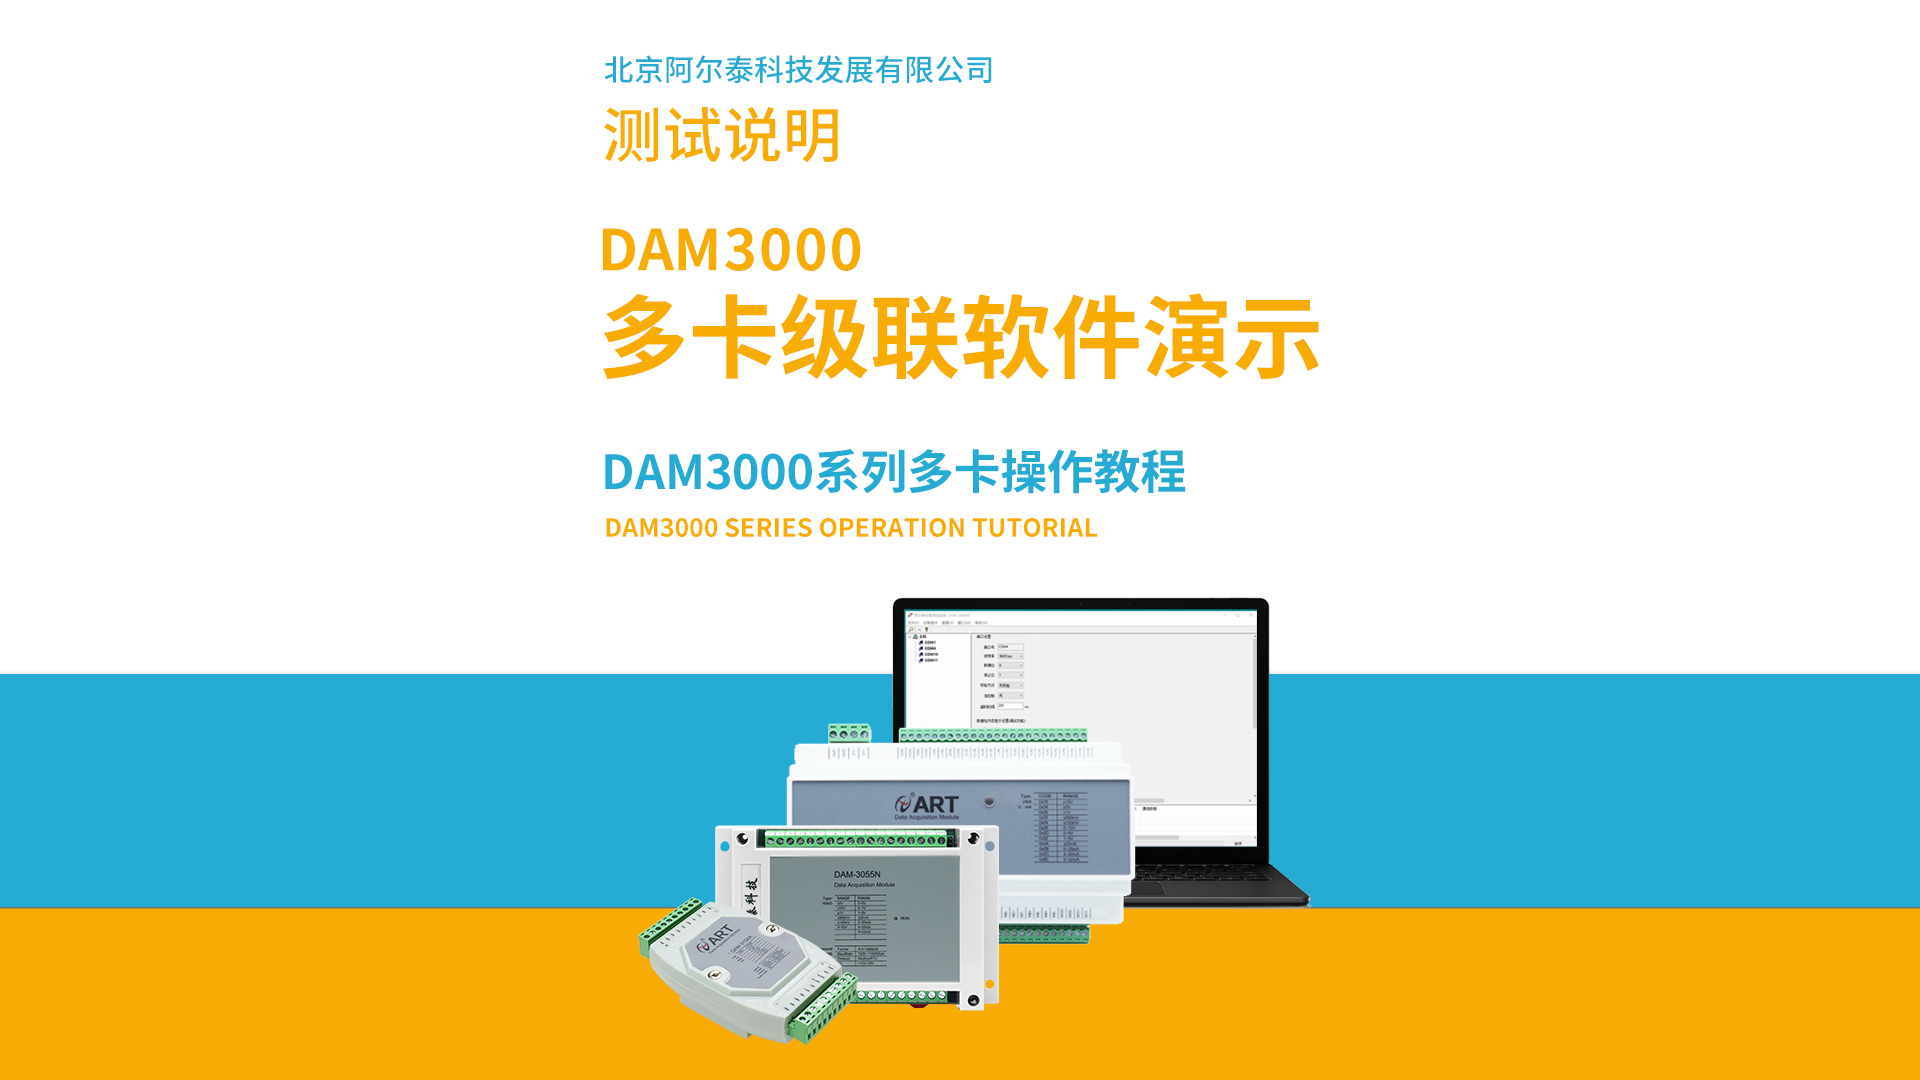 阿爾泰科技DAM3000系列多卡級聯軟件操作教程# #從入門到精通，一起講透元器件！  #數據采集 #工控 